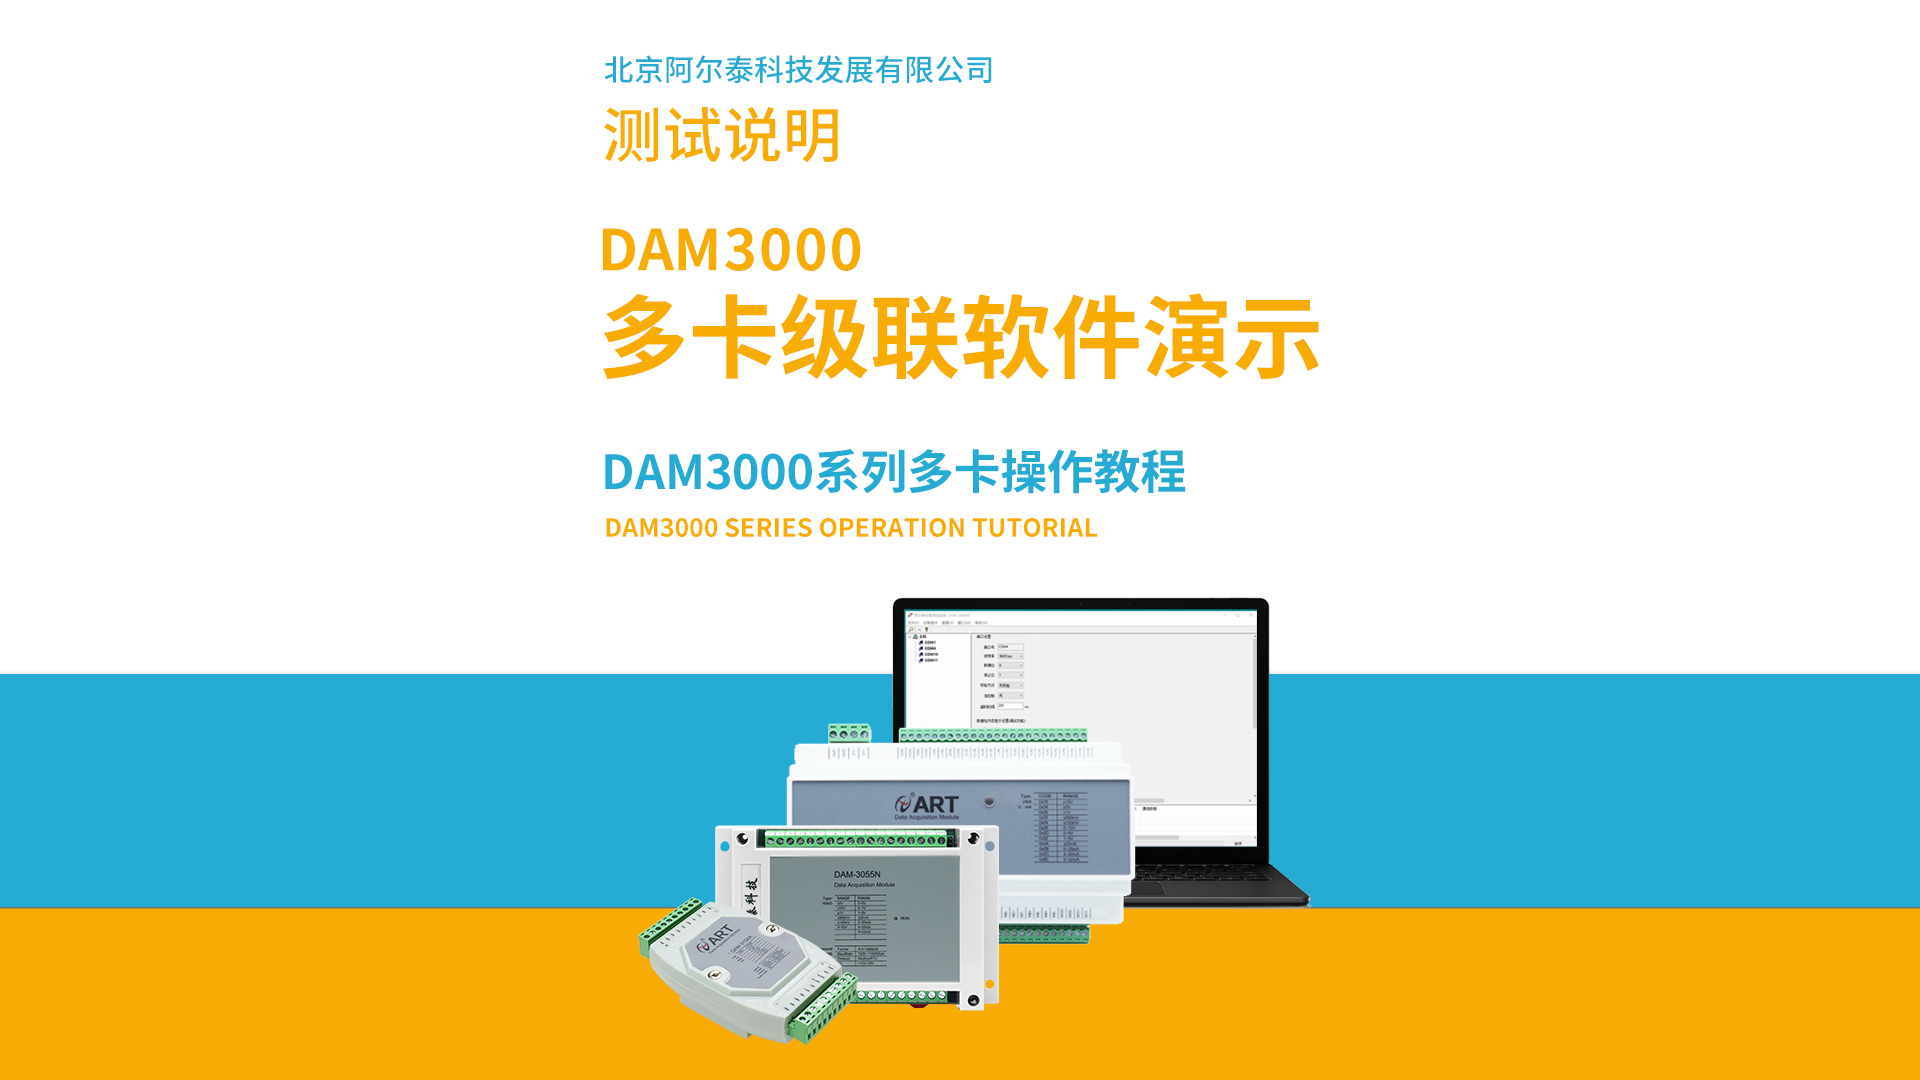 阿爾泰科技DAM3000系列多卡級聯軟件操作教程# #從入門到精通，一起講透元器件！  #數據采集 #工控 